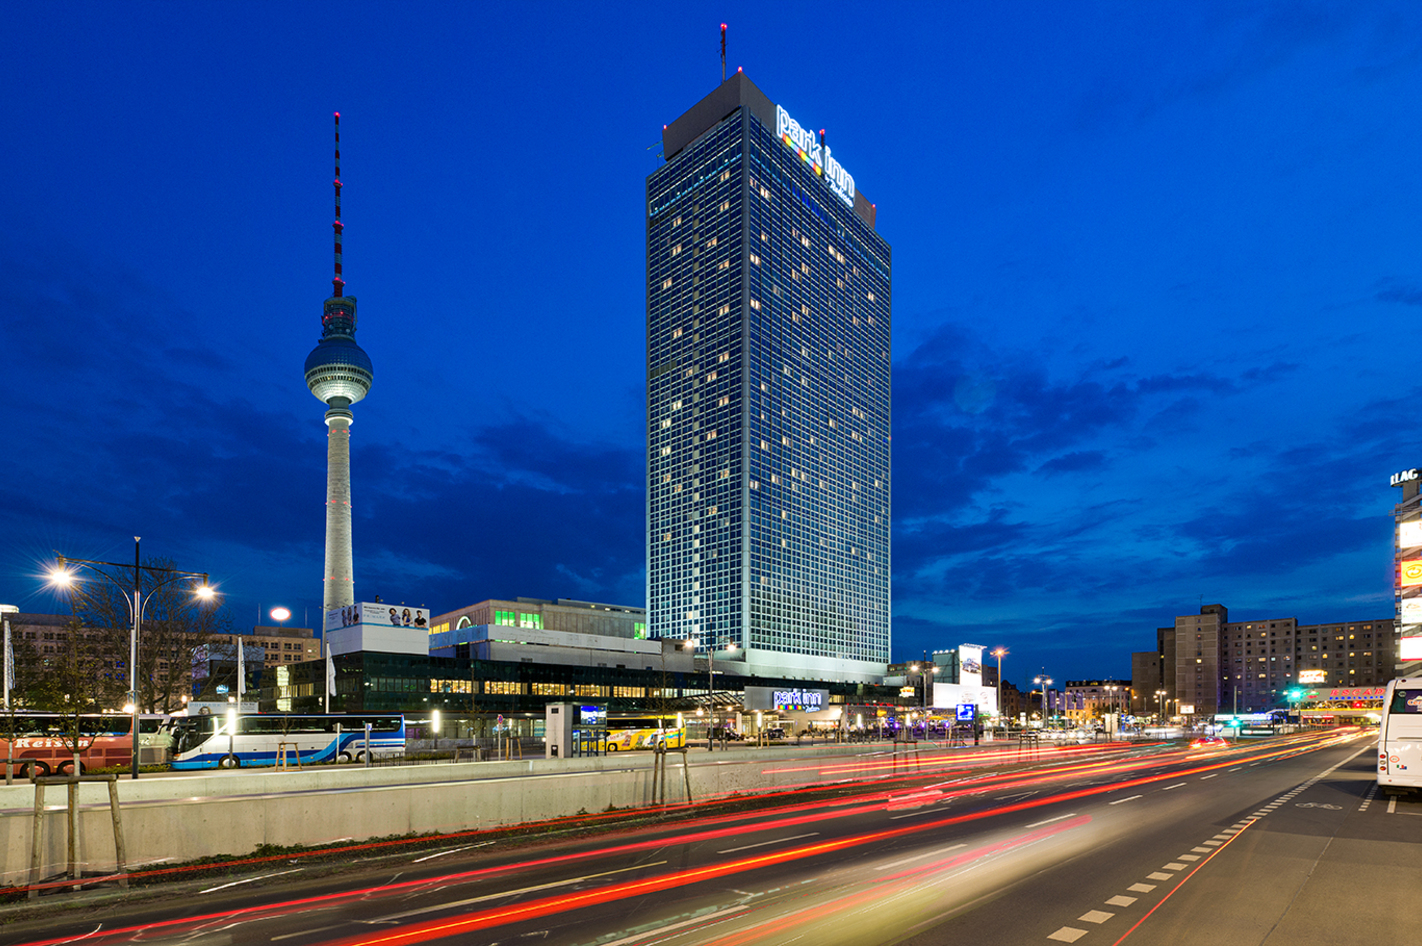 Städtetrip Berlin für 2 (1 Nacht) – Die Hauptstadt Deutschlands und ihr mittendrin